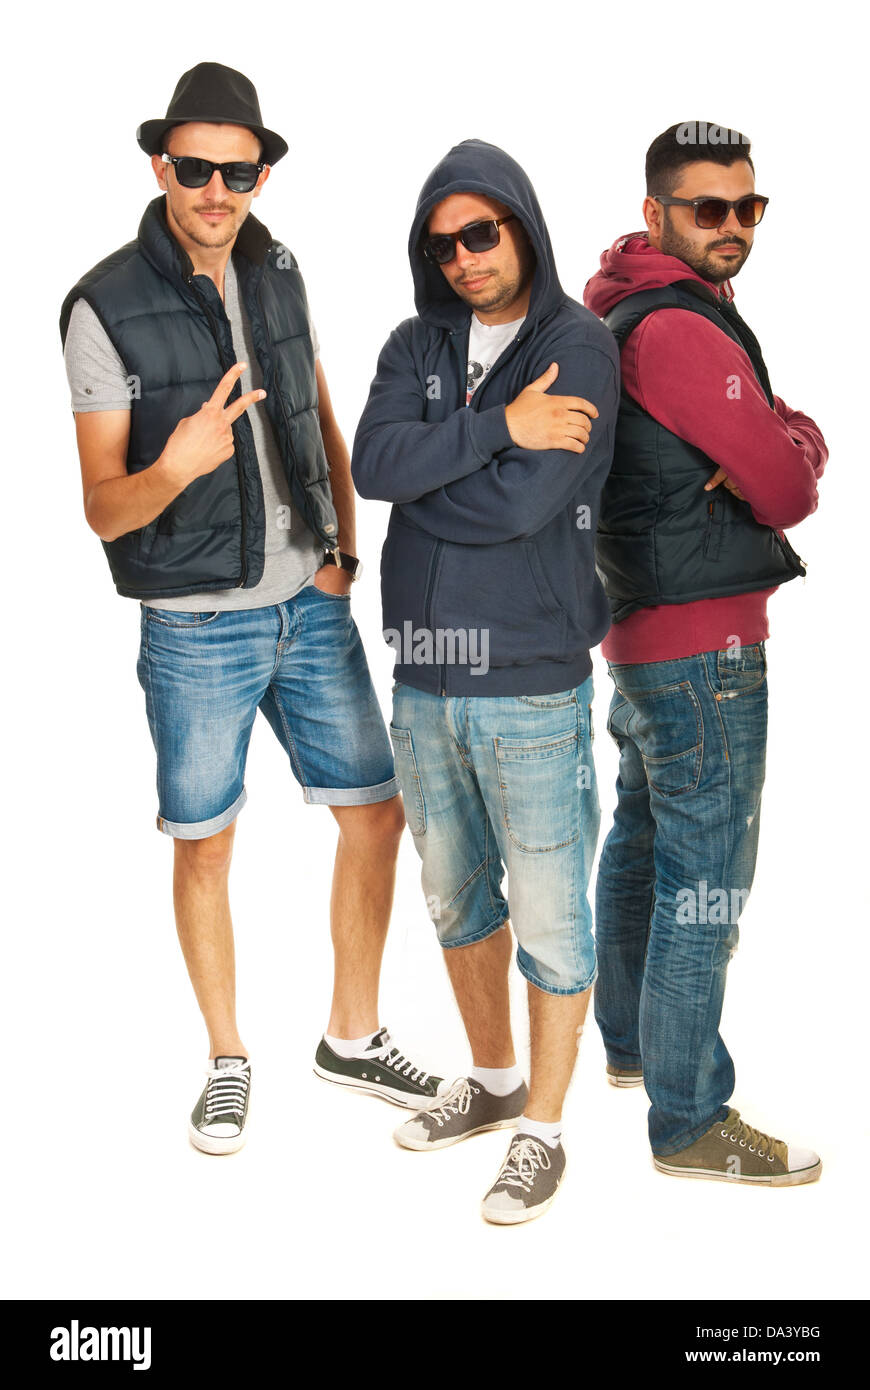 Gruppo di tre ballerini hip hop con occhiali da sole isolato su sfondo bianco Foto Stock